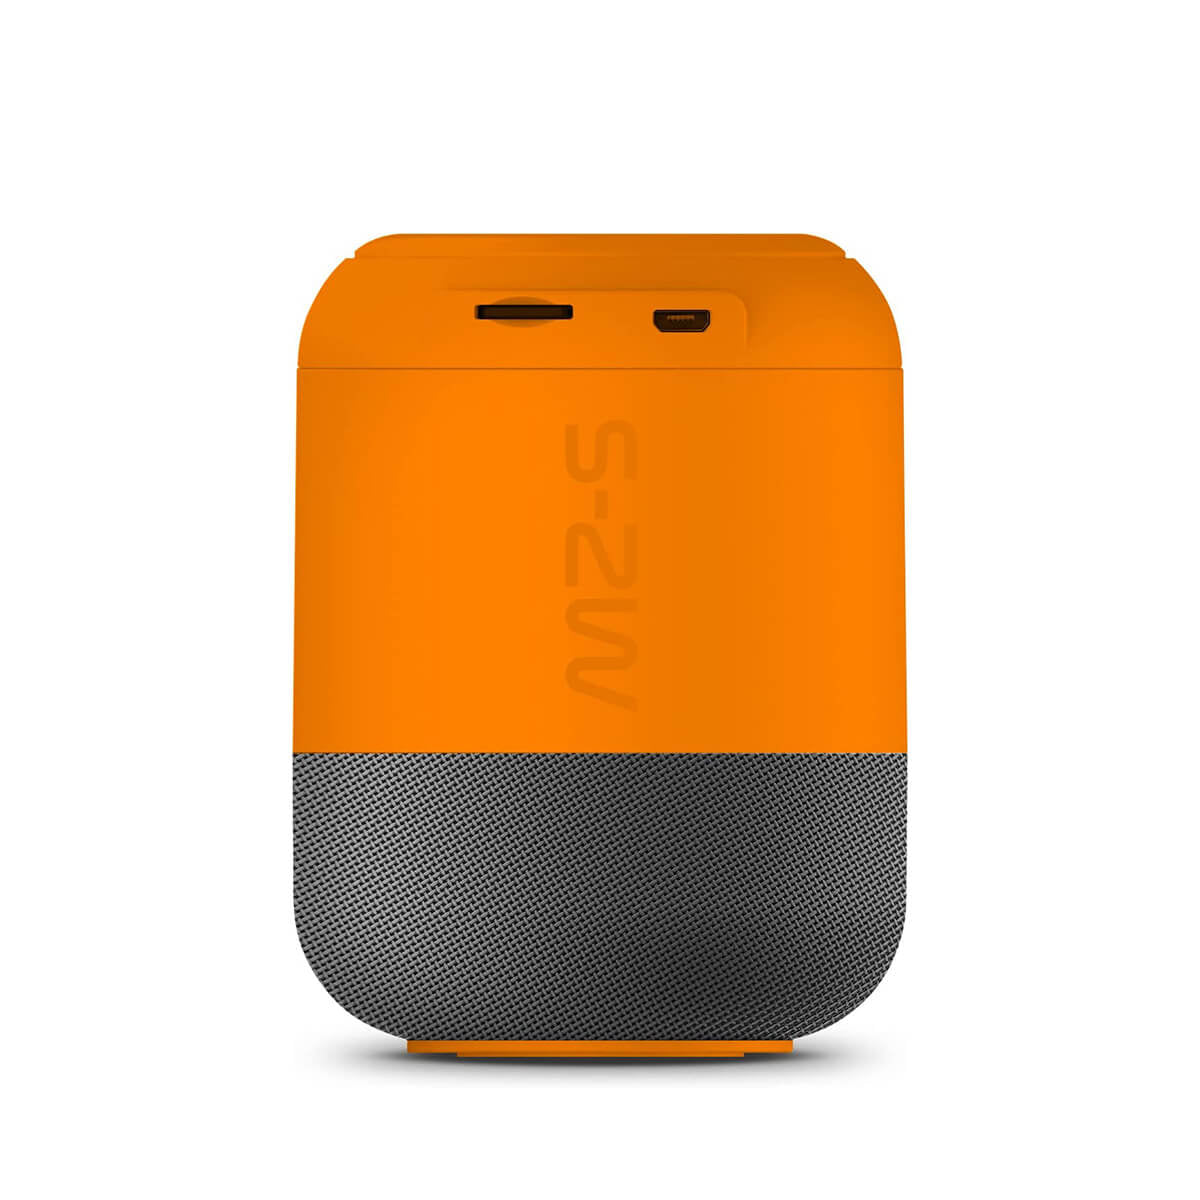 Veho MZ-S Bluetooth speaker Orange